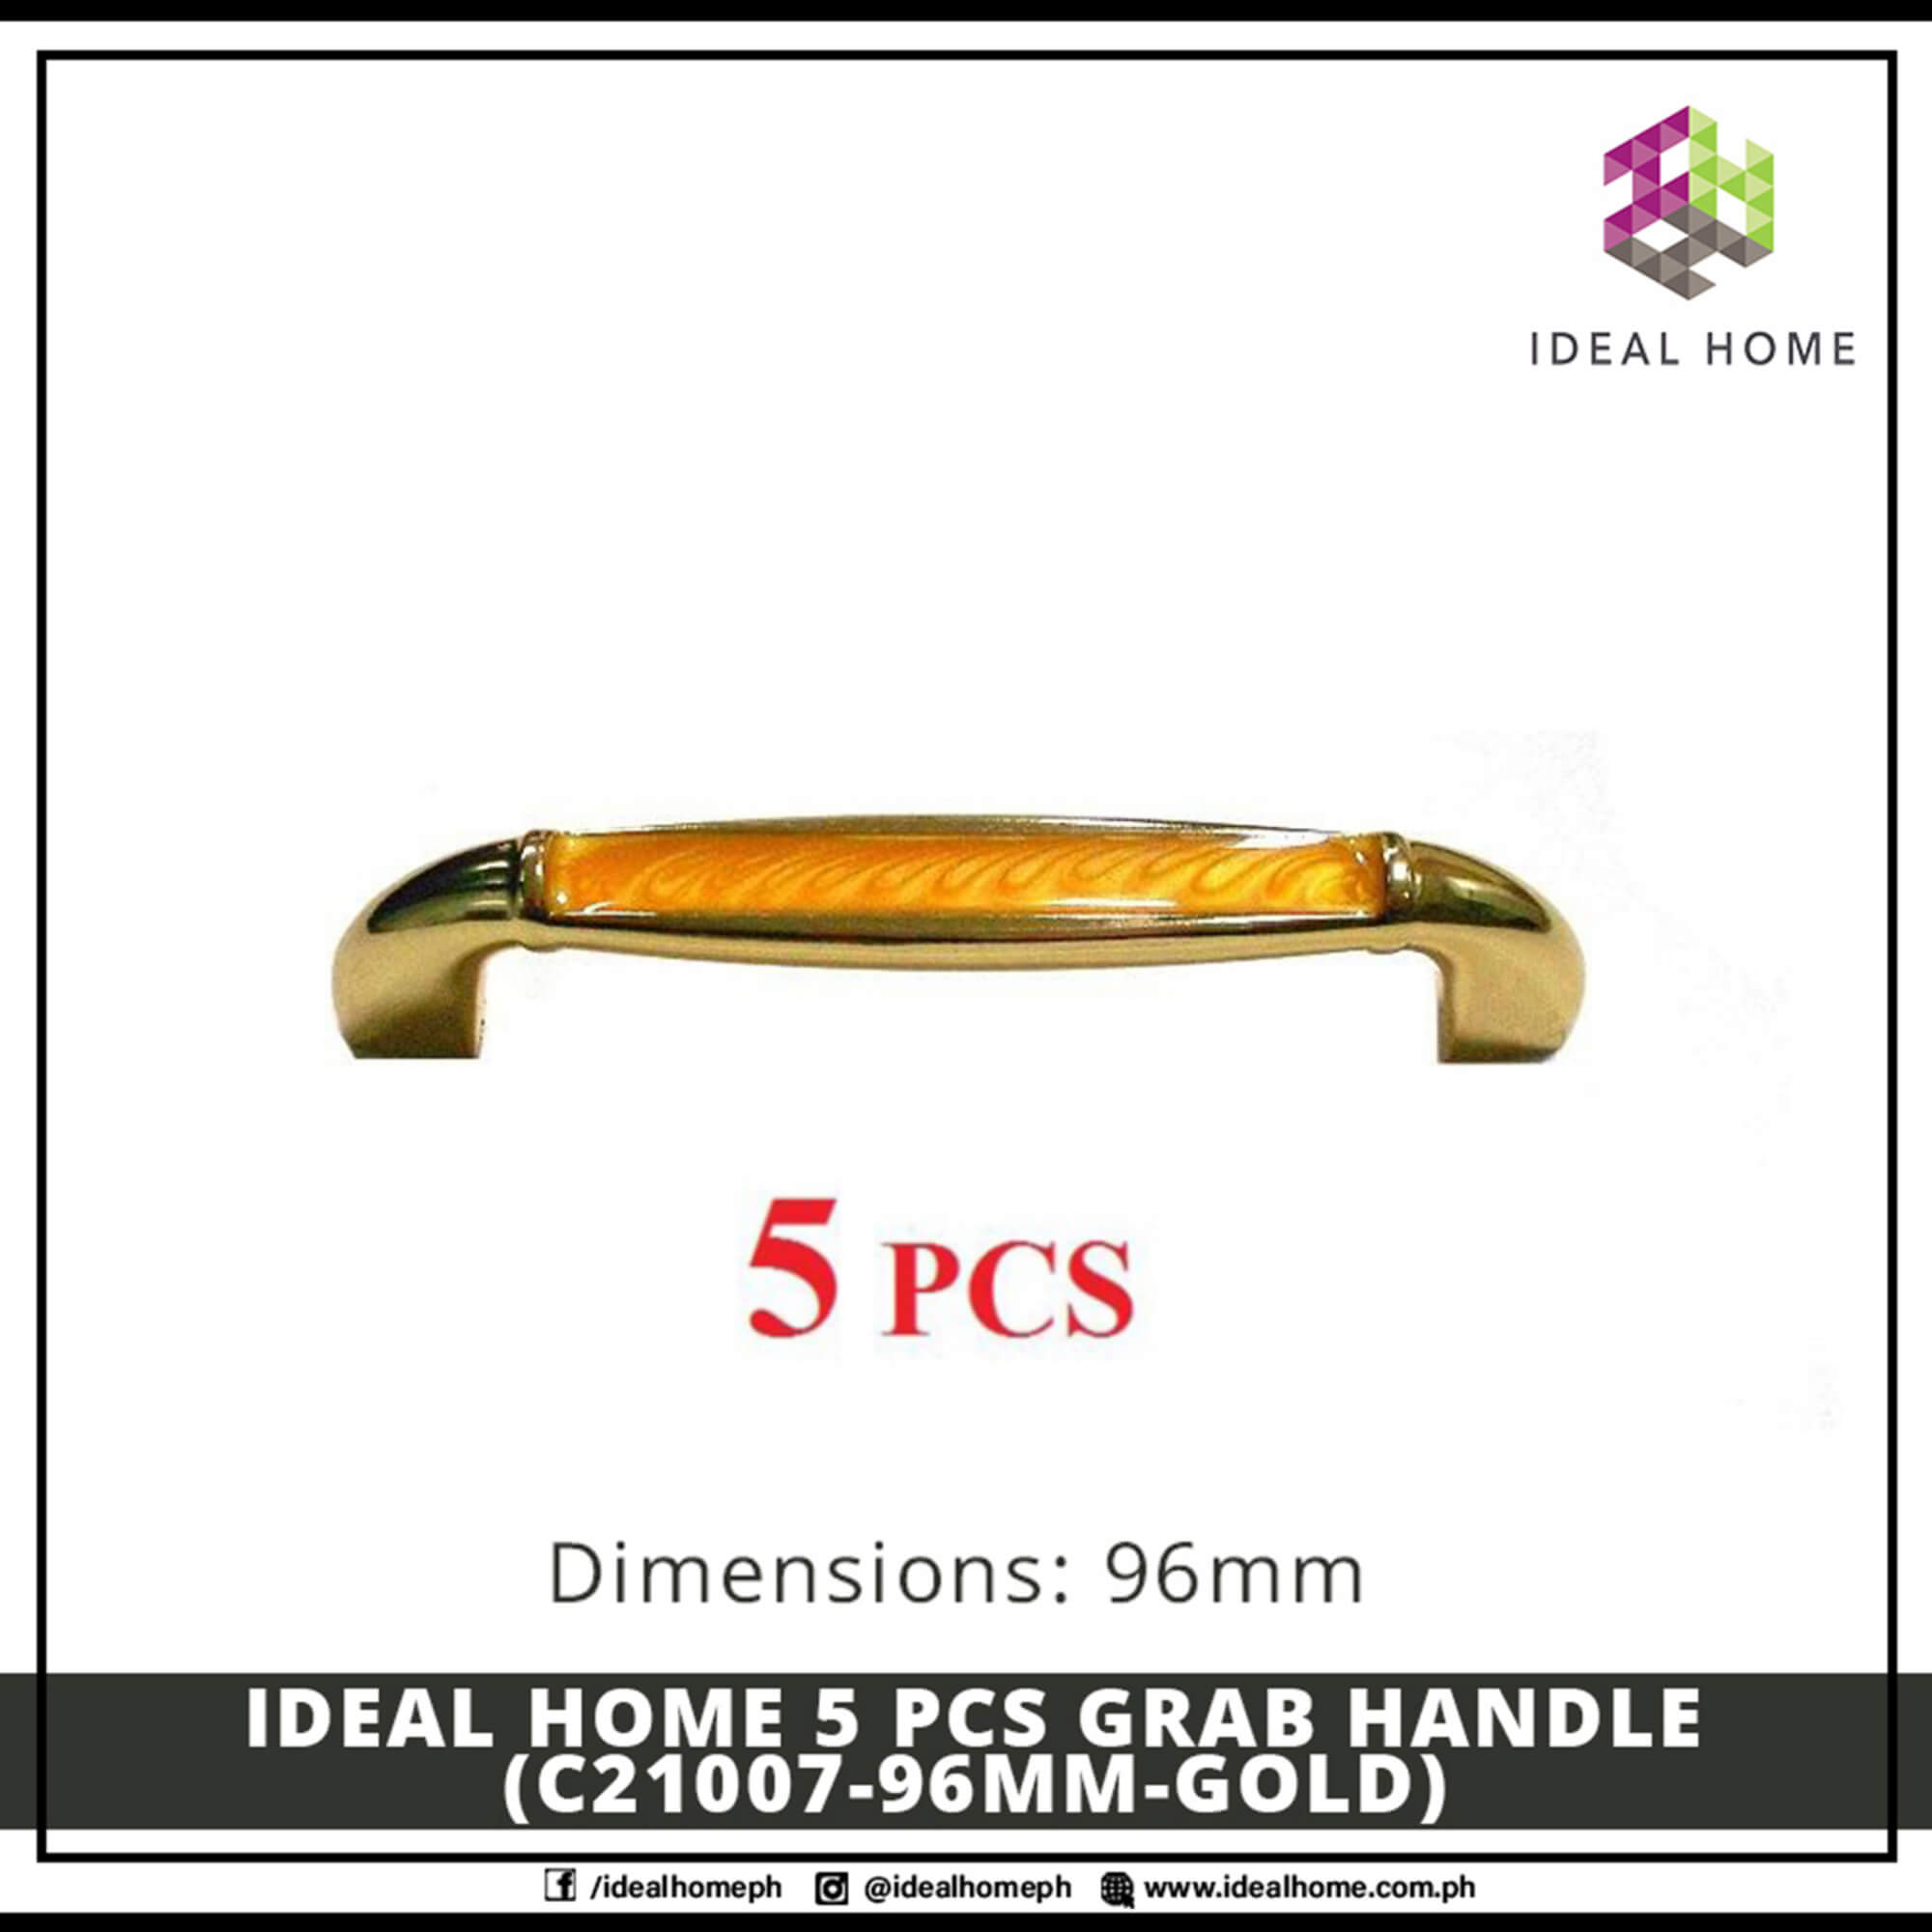 Ideal Home 5 PCS Grab Handle (C21007-96mm-GOLD)